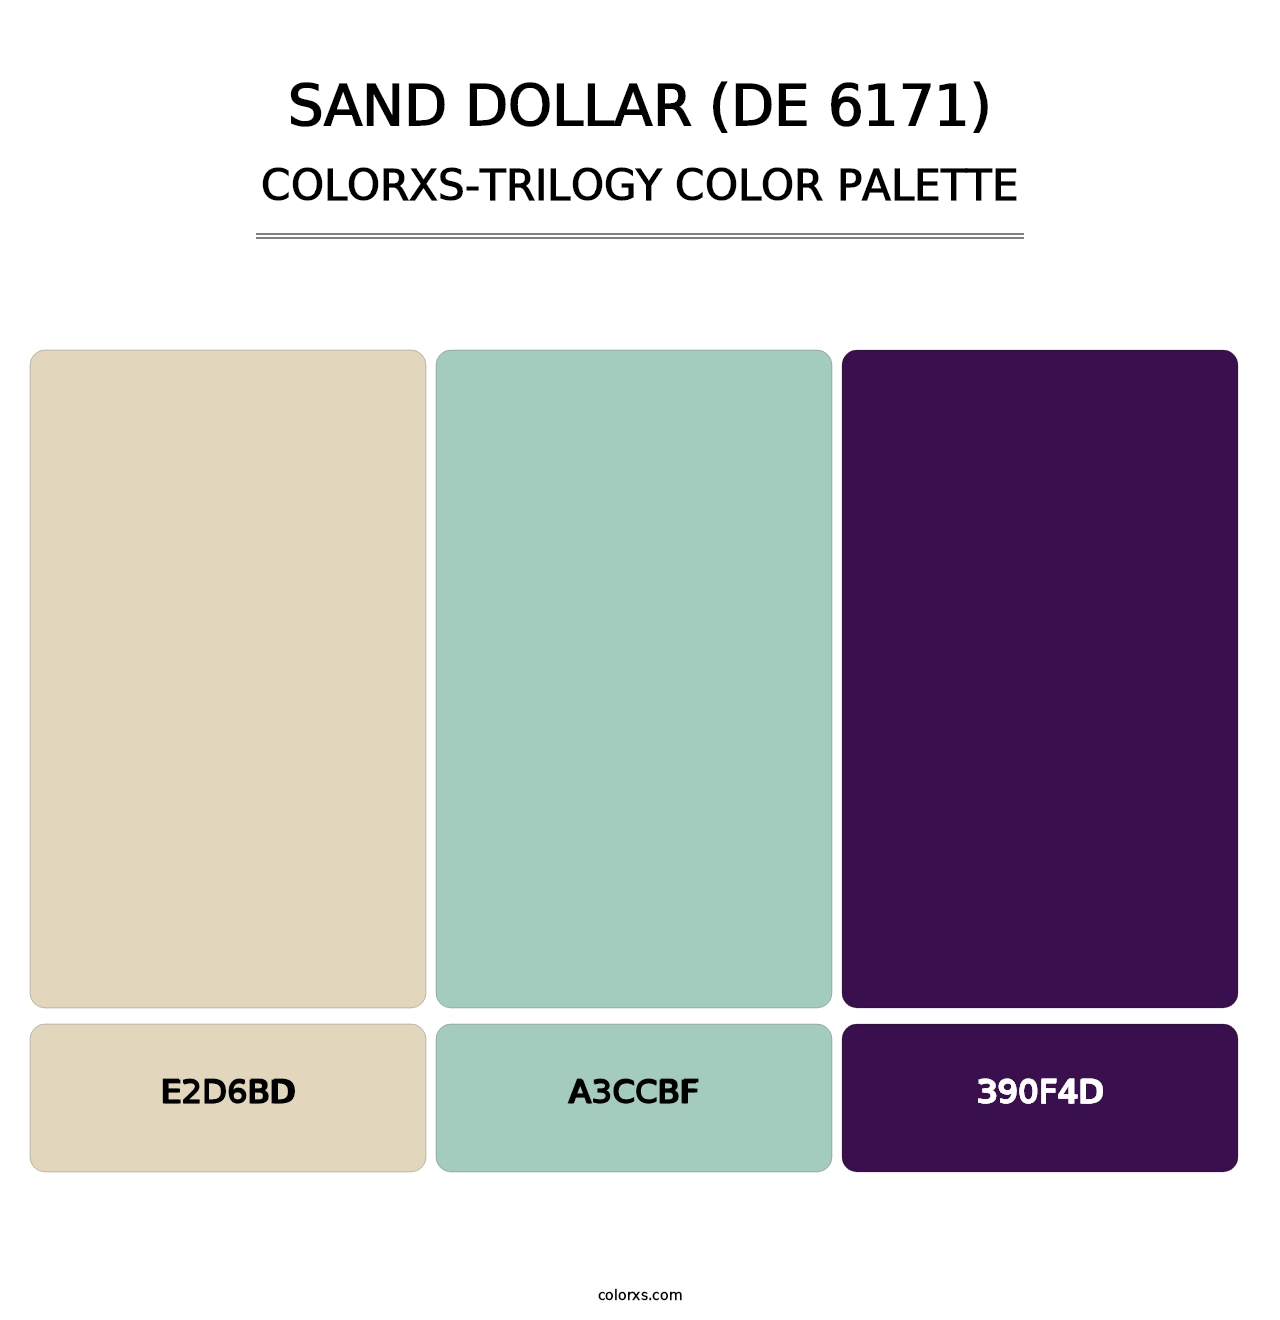 Sand Dollar (DE 6171) - Colorxs Trilogy Palette